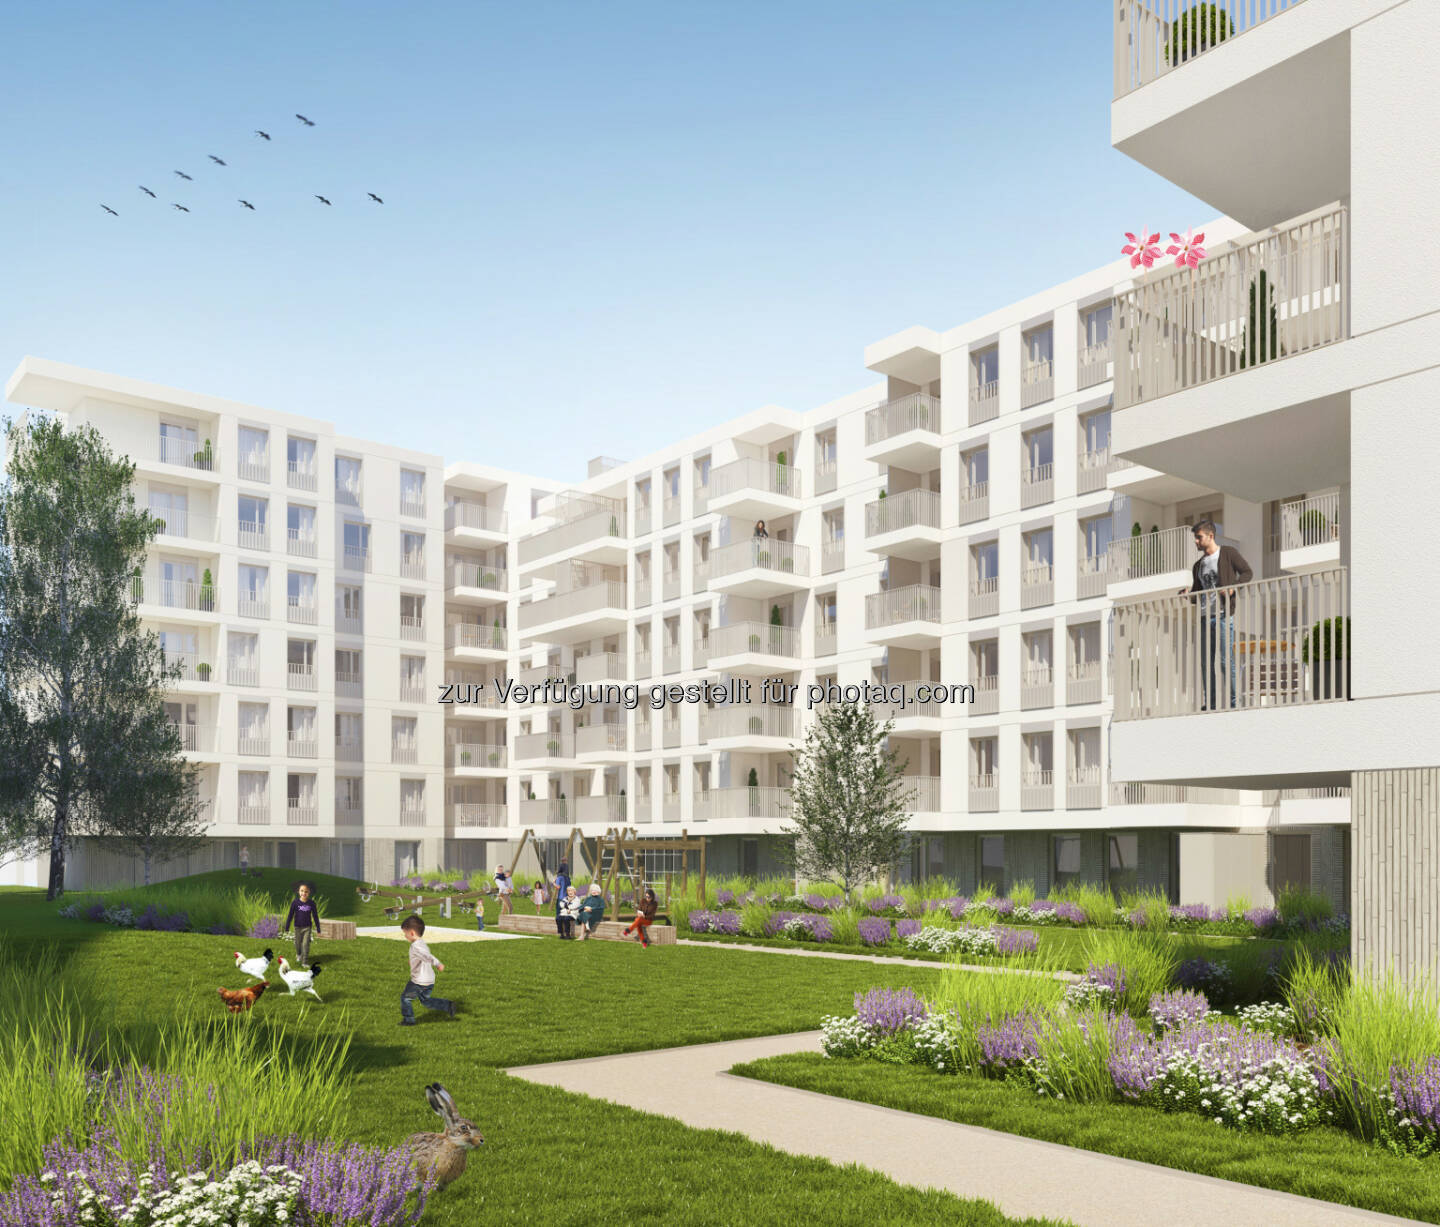 CA Immobilien Anlagen AG: CA Immo startet Wohnprojekt im Wiener Quartier Lände 3